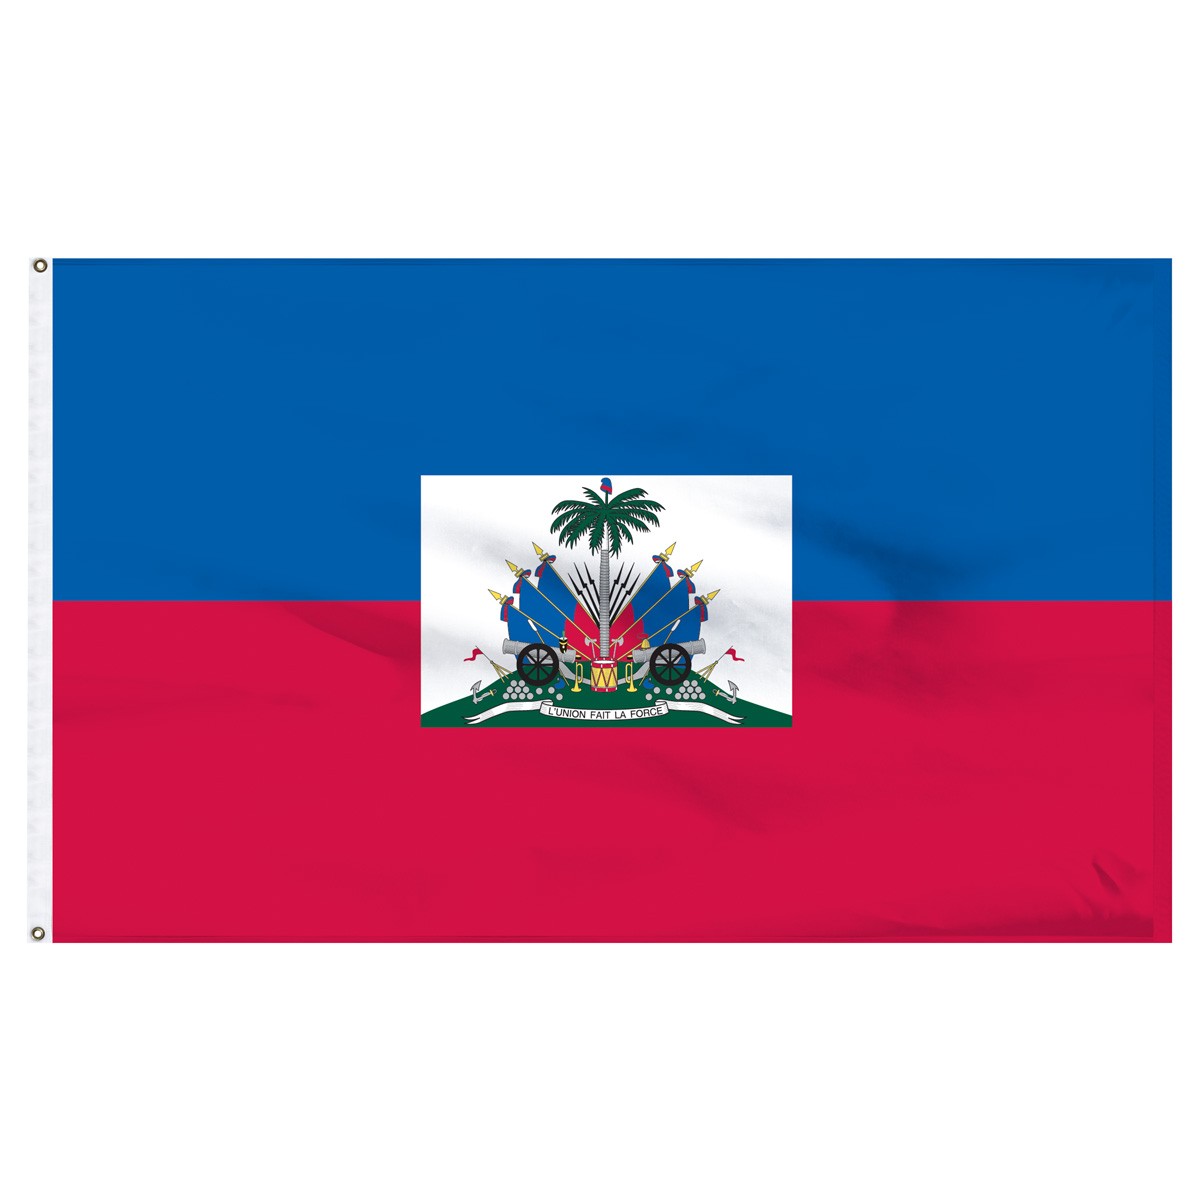 Haiti Beach Flag and Sailing Flag